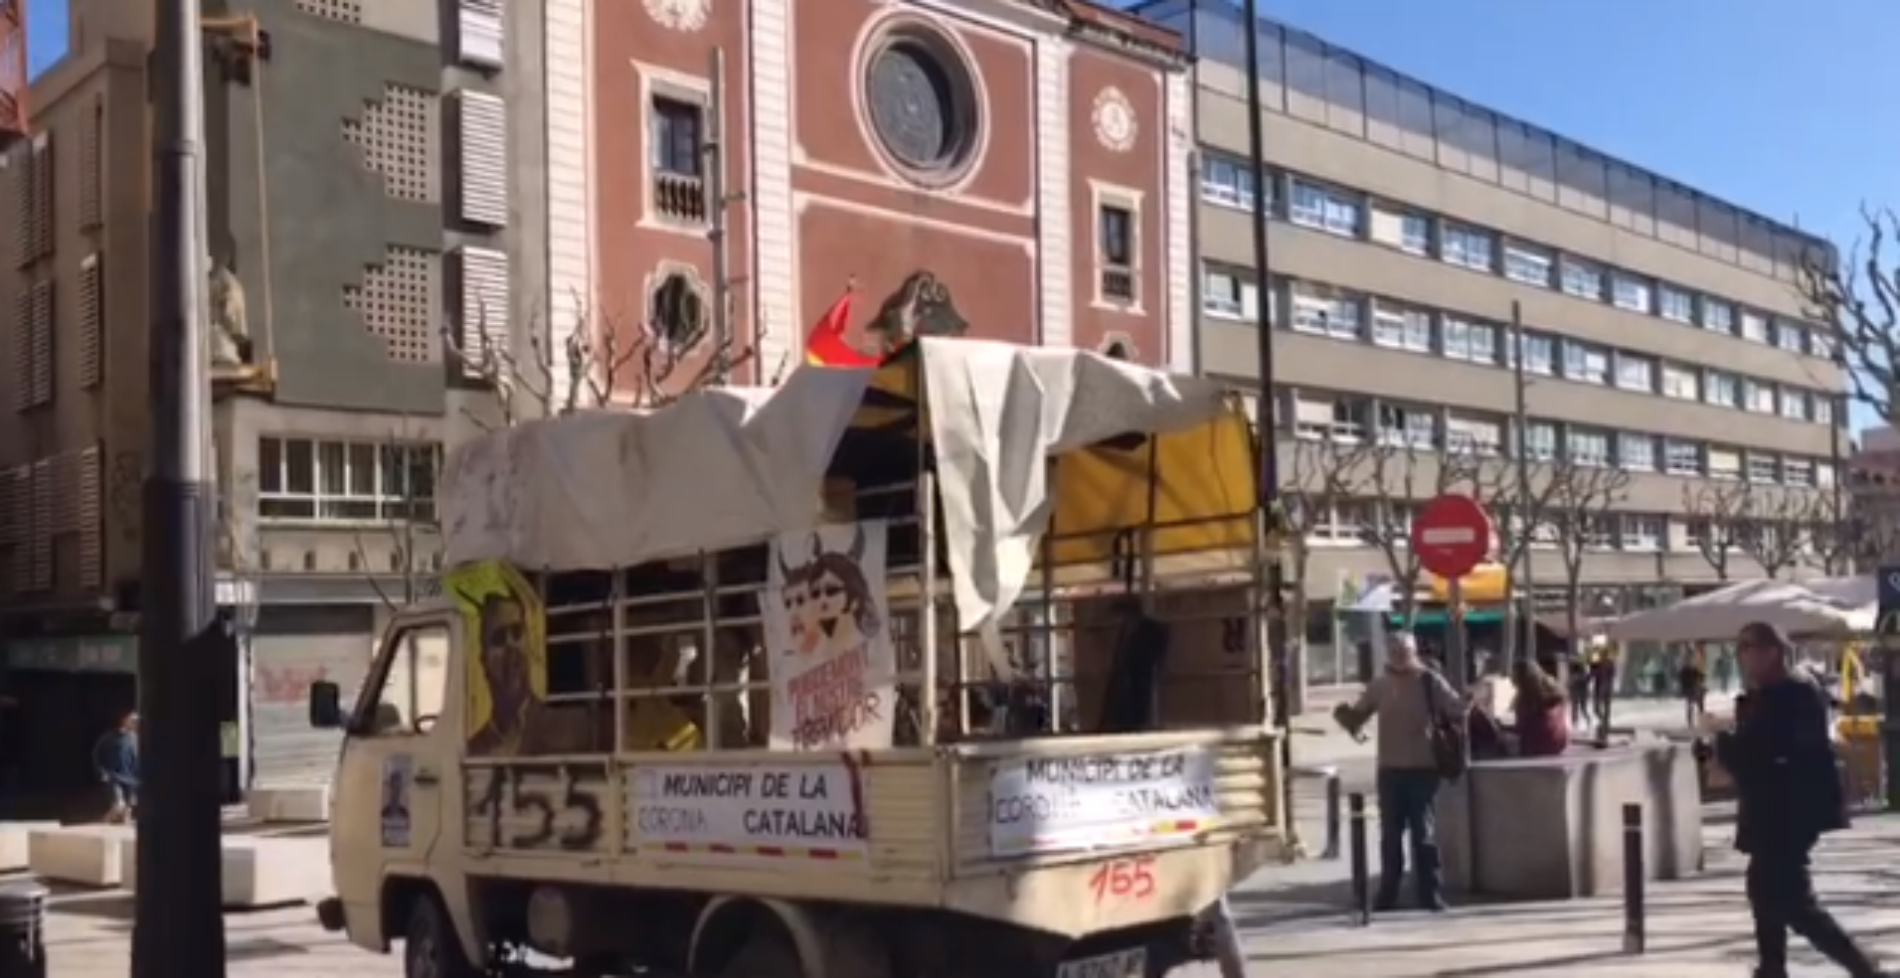 Agresión en Mataró por parte del propietario del camión del 155